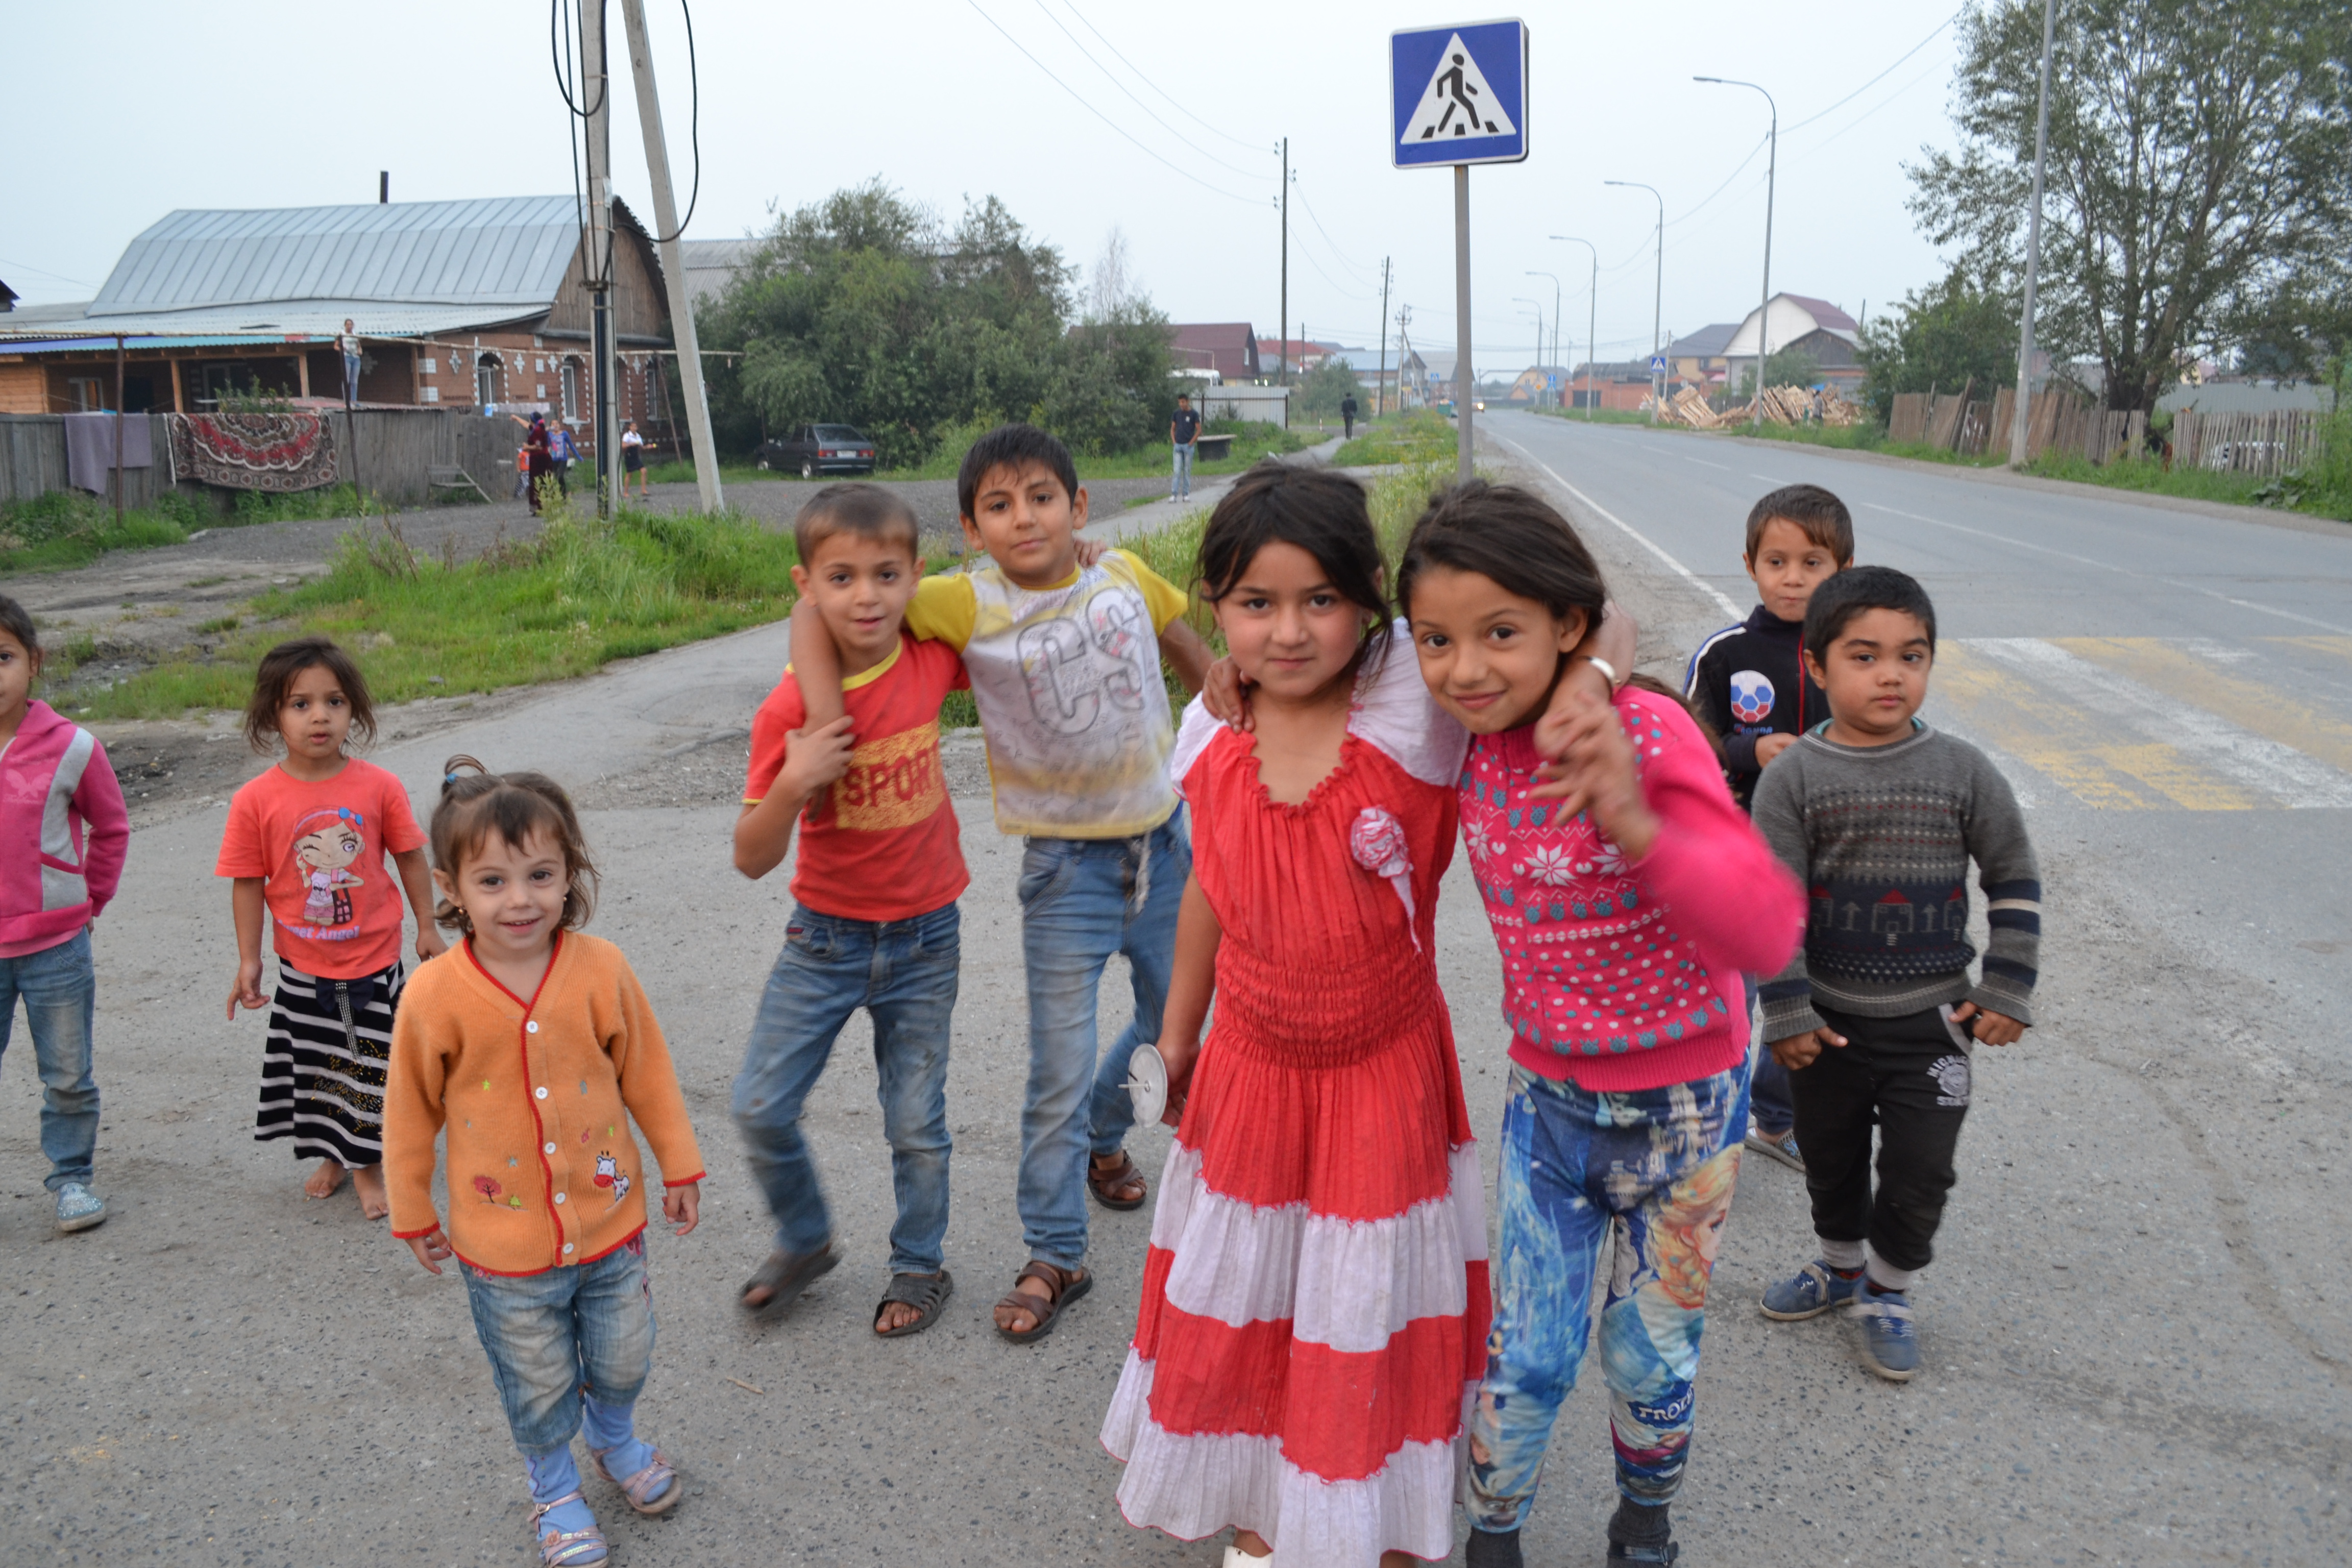 Тюменская Нахаловка в поселке Нефтяников - 28 июля 2016 года